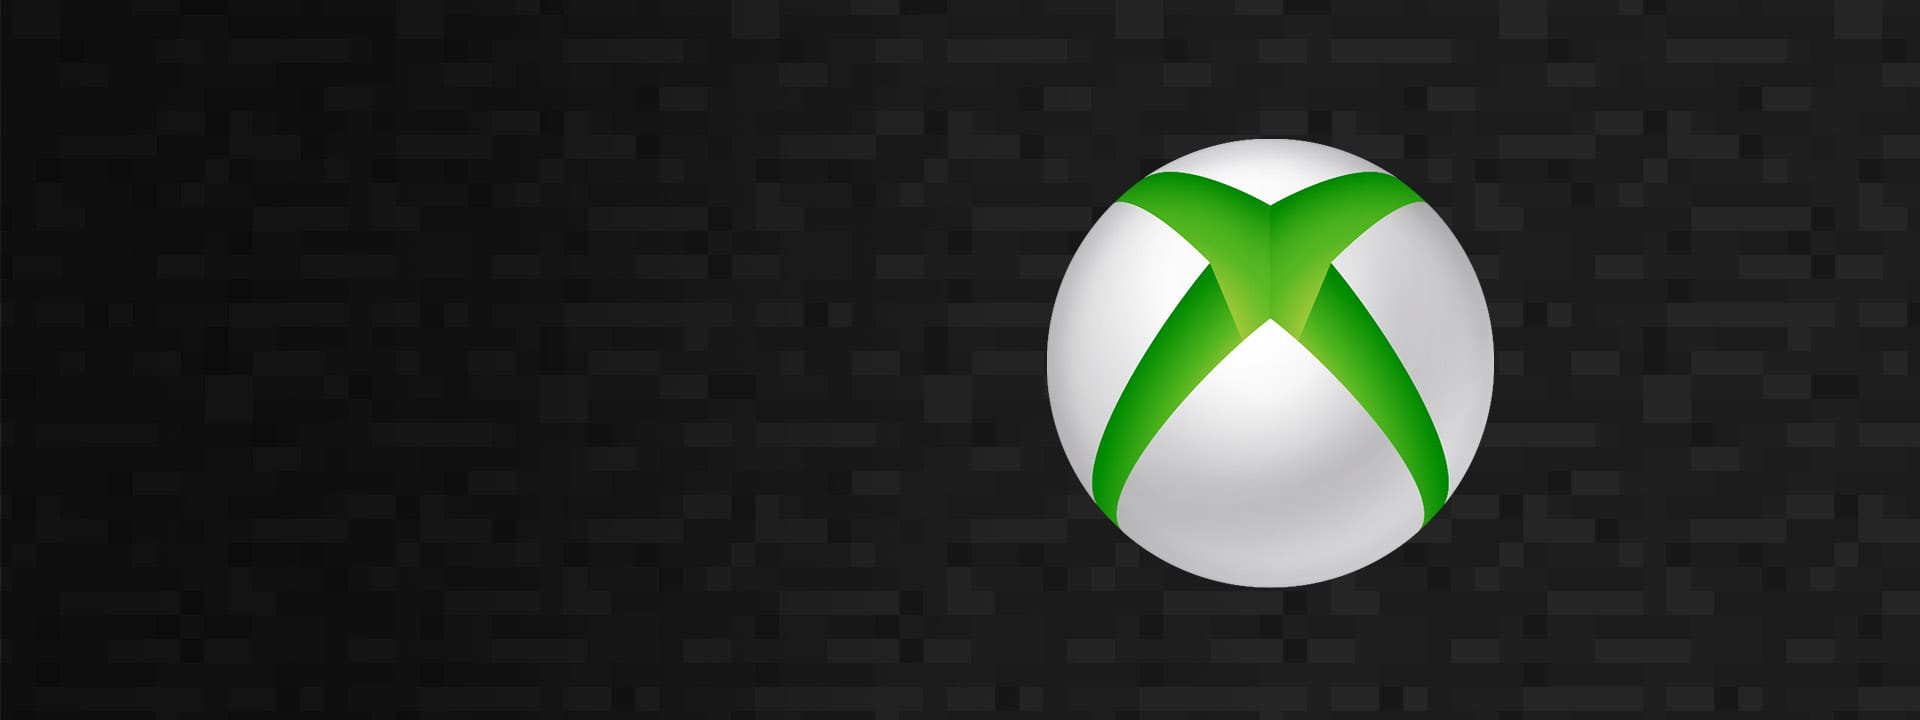 أخبار أكتر عن منصة Xbox Series S خلال الأسابيع القادمة